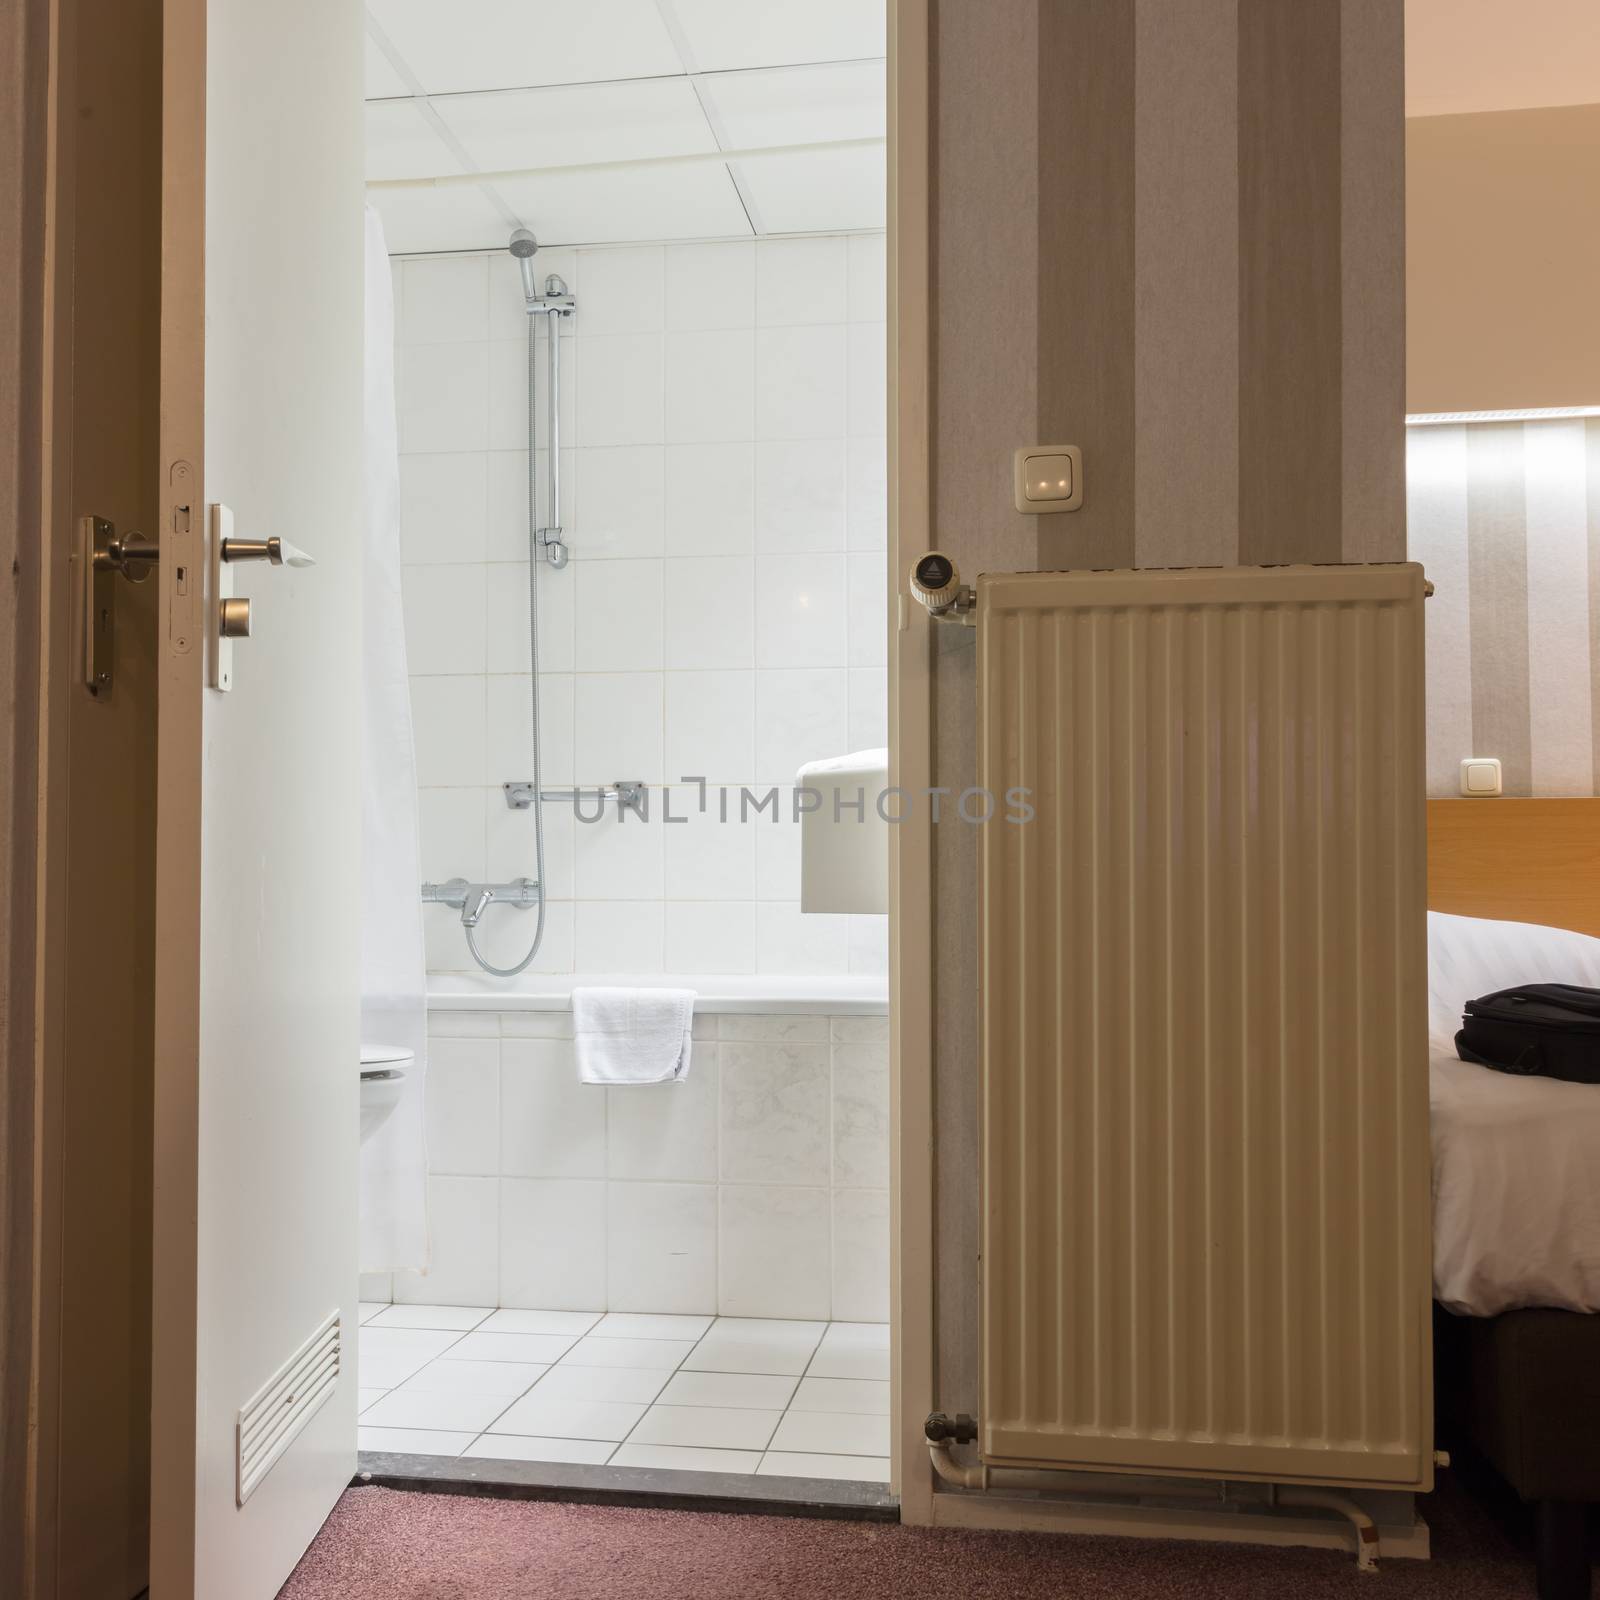 Inside a simple hotel room - Door to the bathroom is open